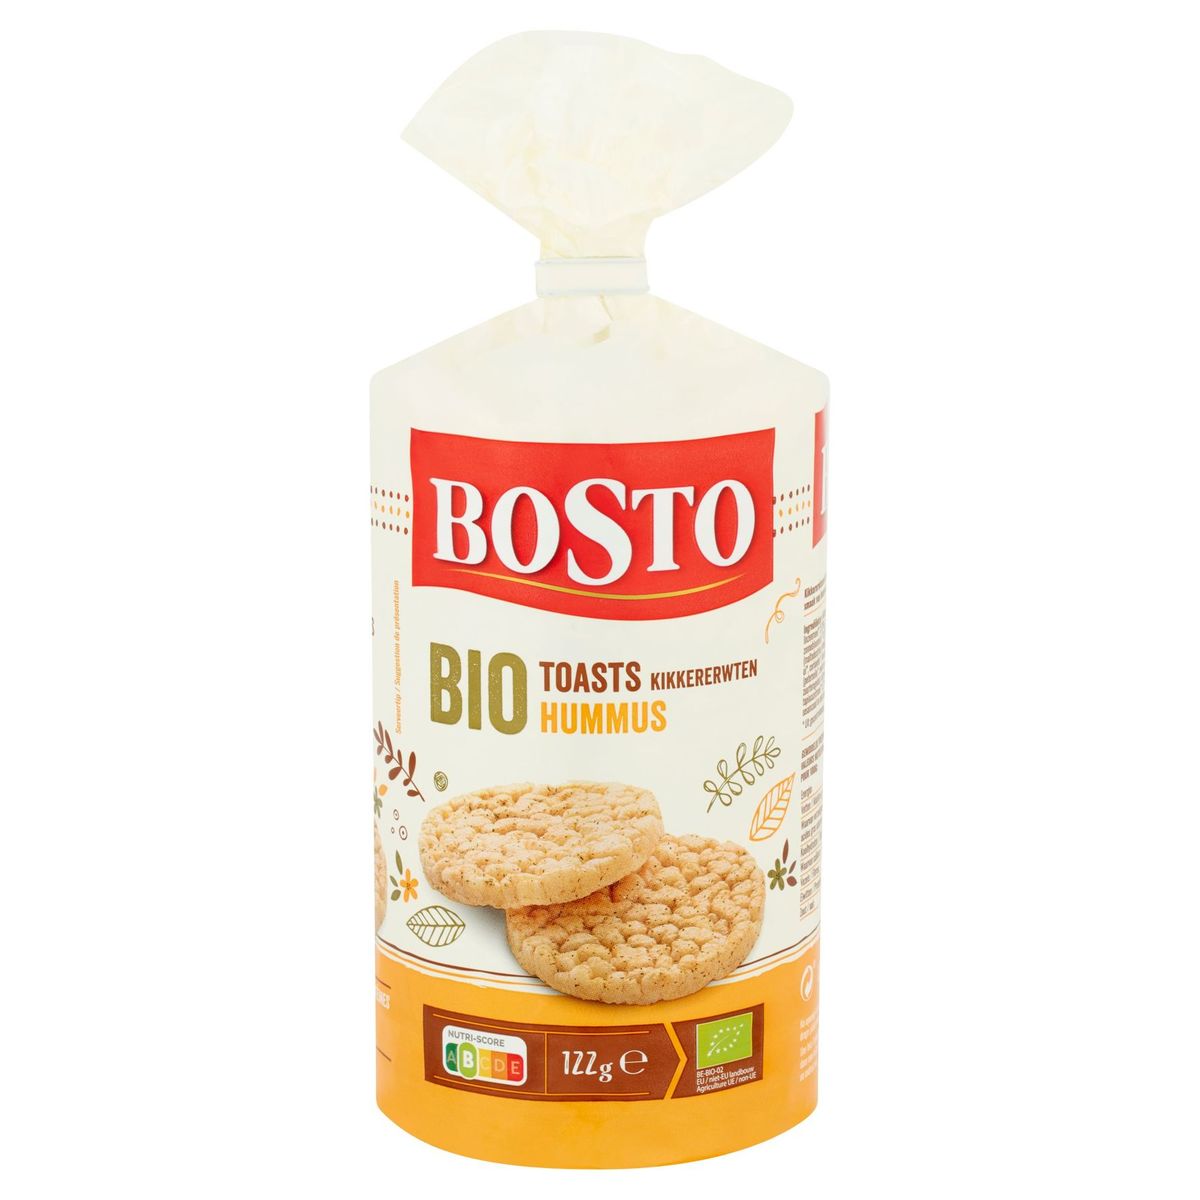 Bosto Bio Toasts Pois Chiches Houmous 122 g